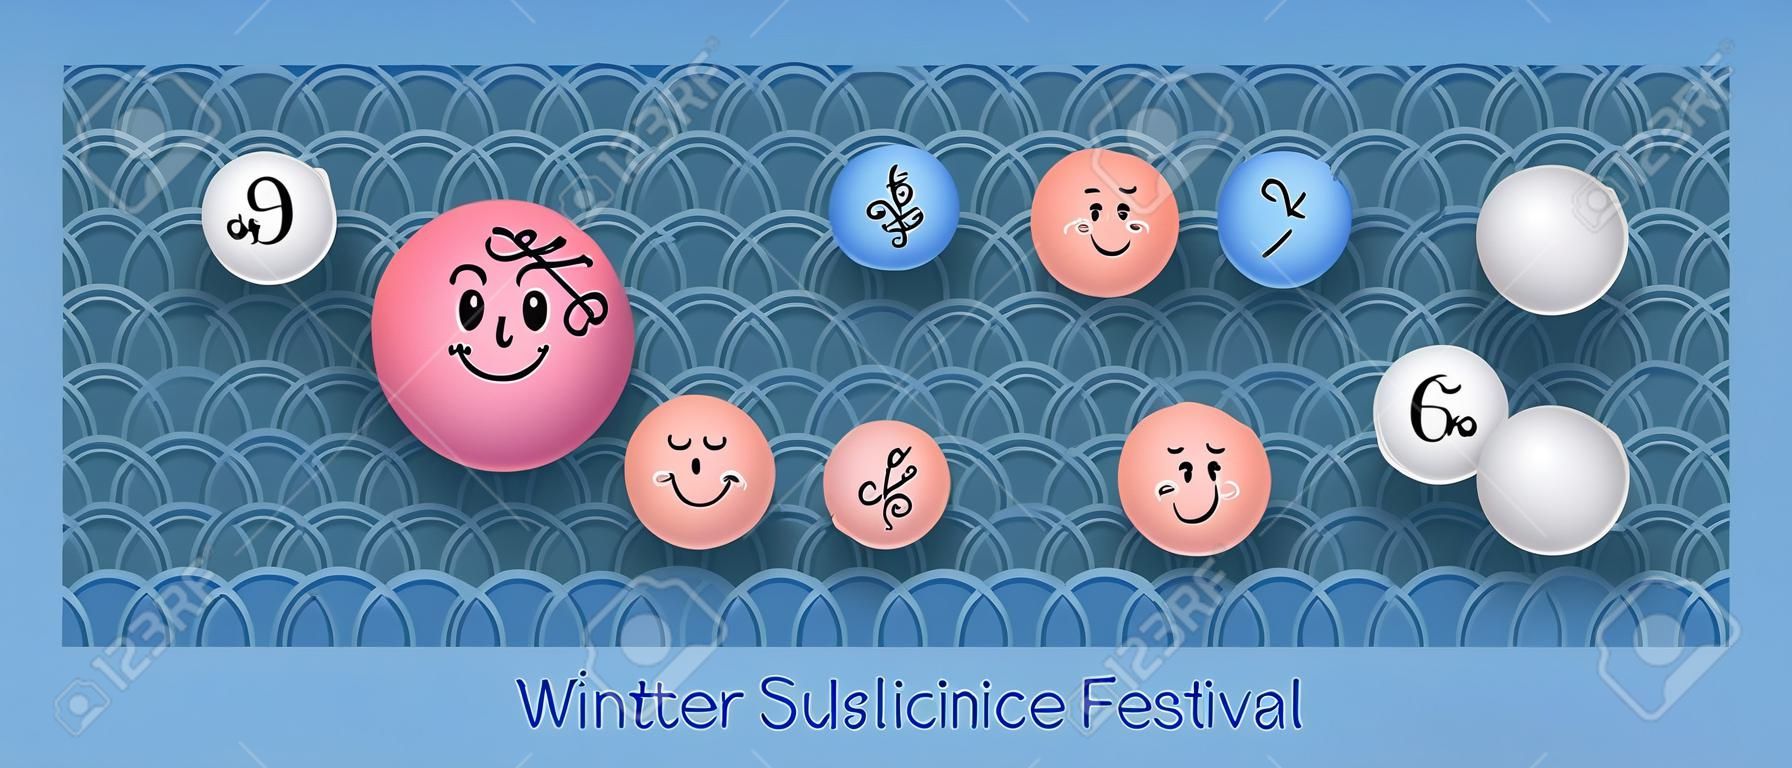 冬至の伝統的な中国の祭りのバナーベクトル。冬至まつり。湯円餃子とおにぎりが上面に表示されます。漢字は冬のピークを意味します